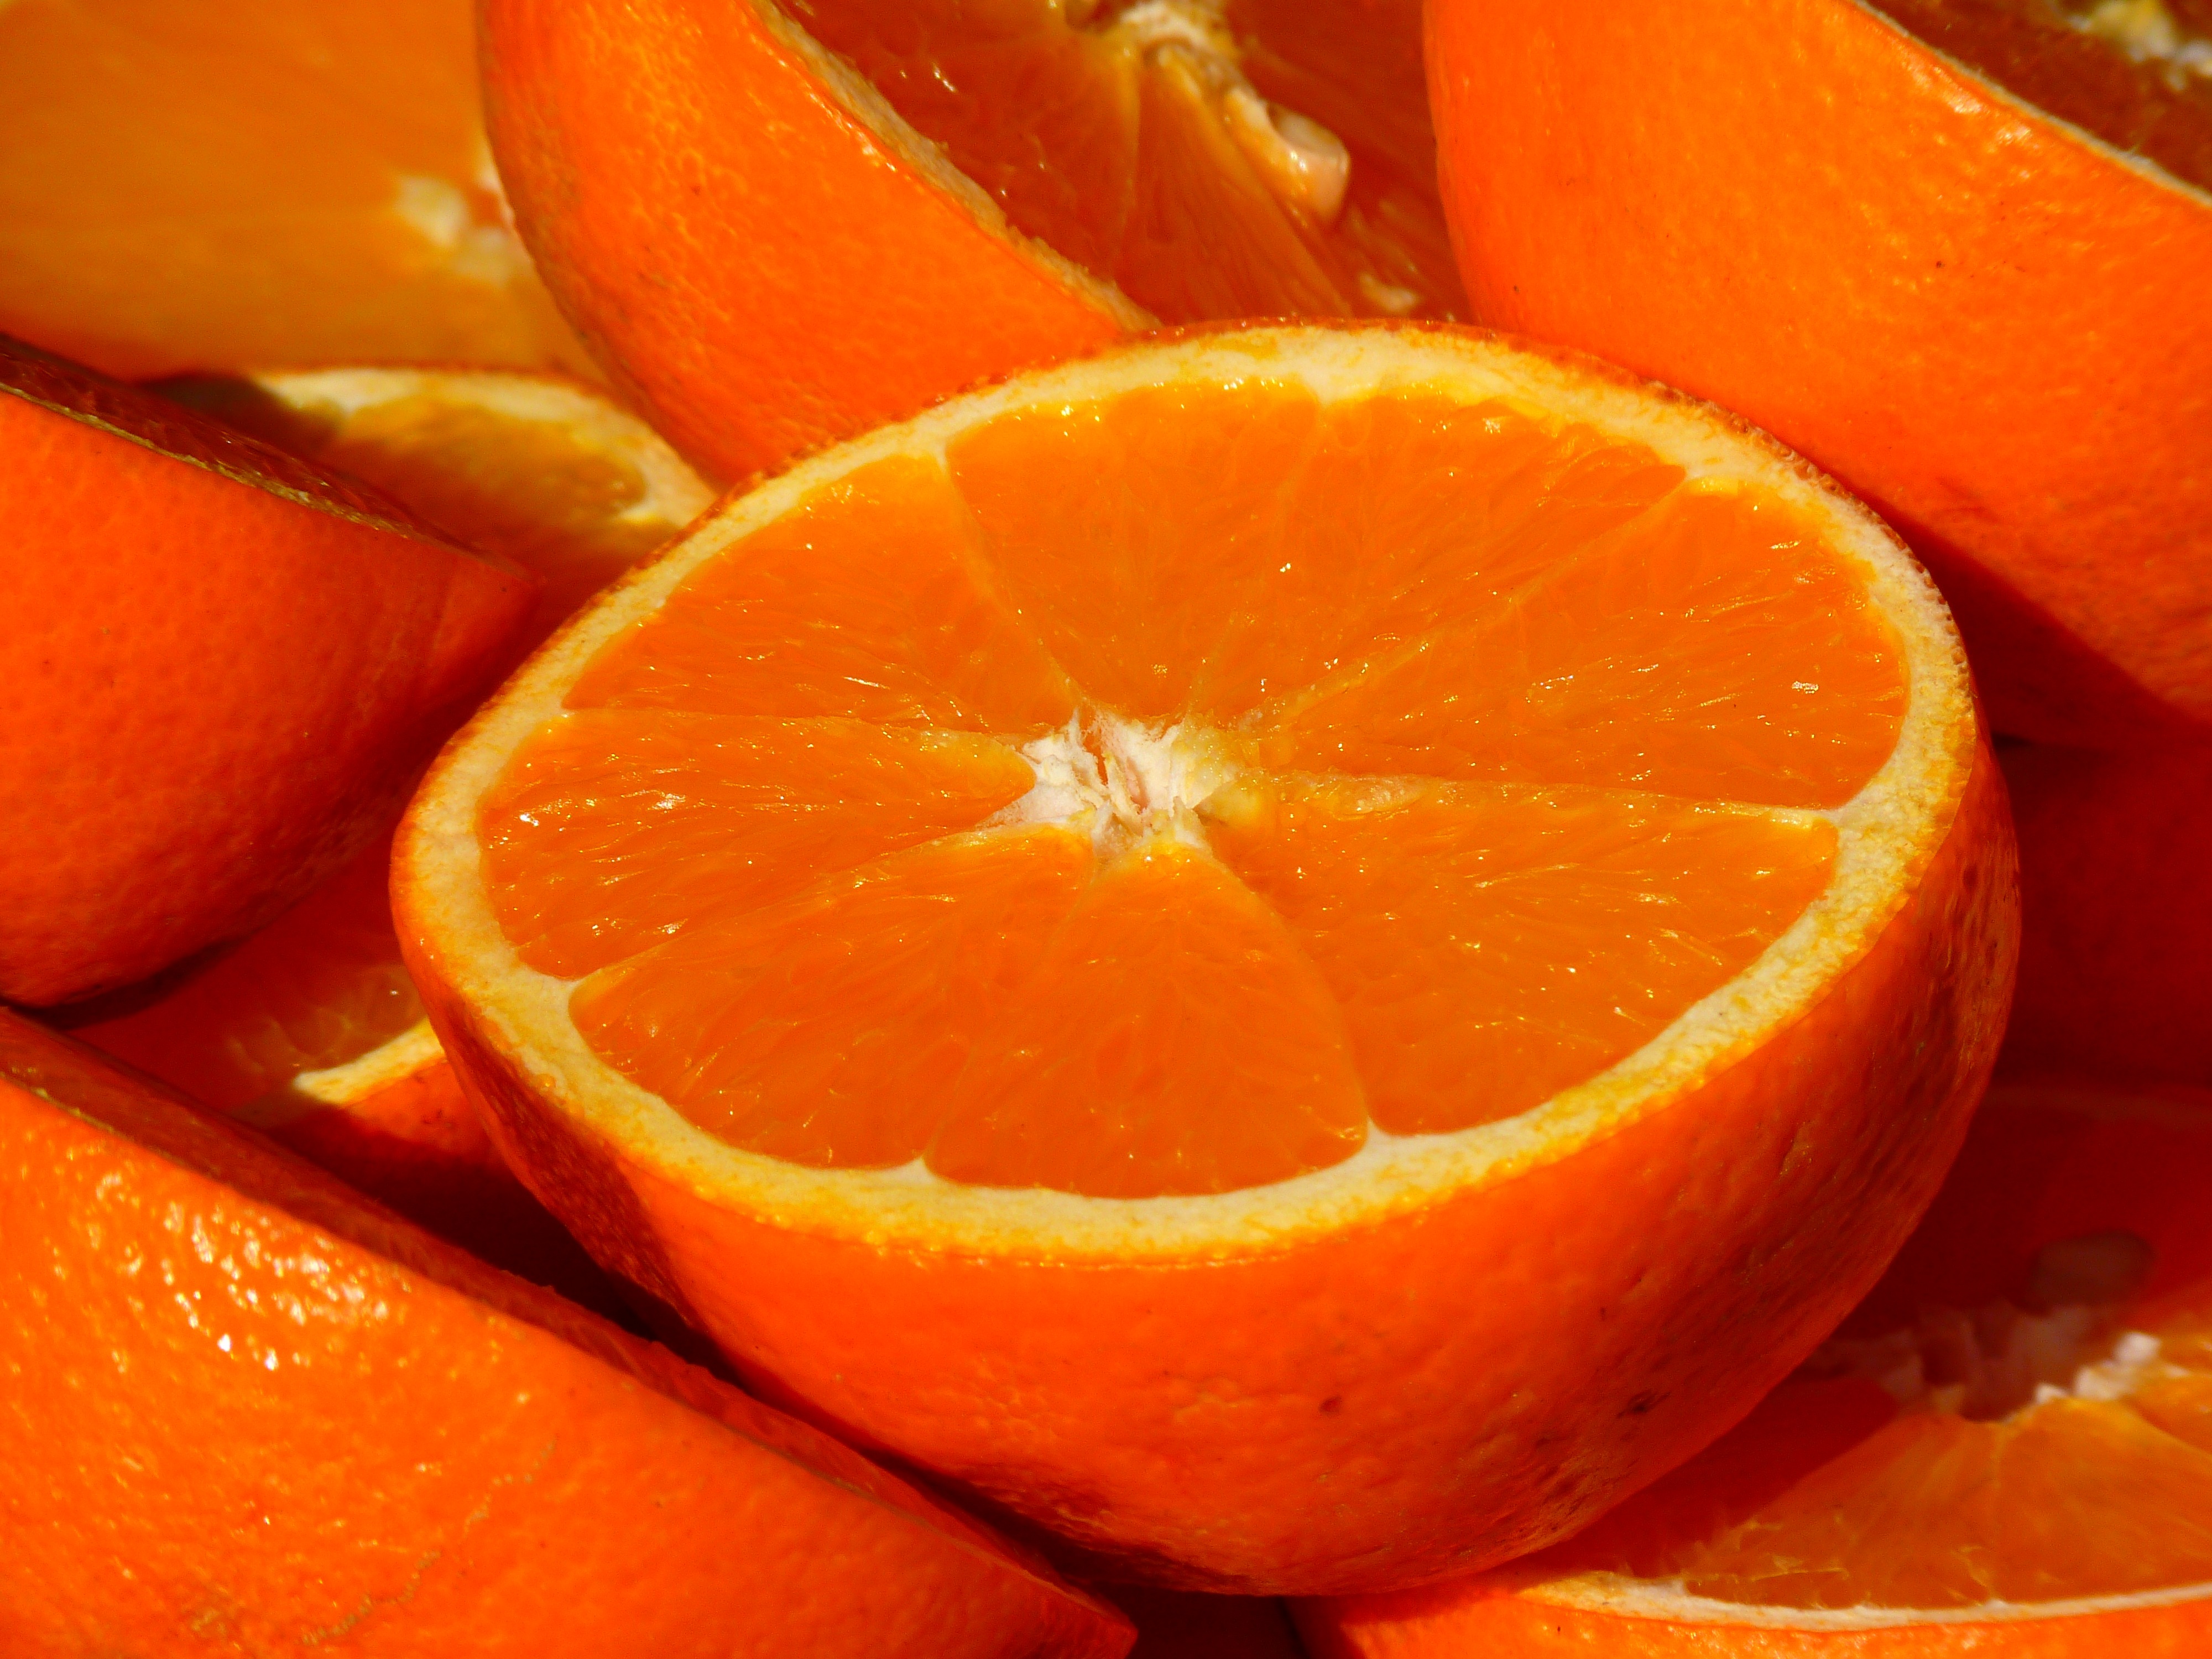 An orange orange in a slice.